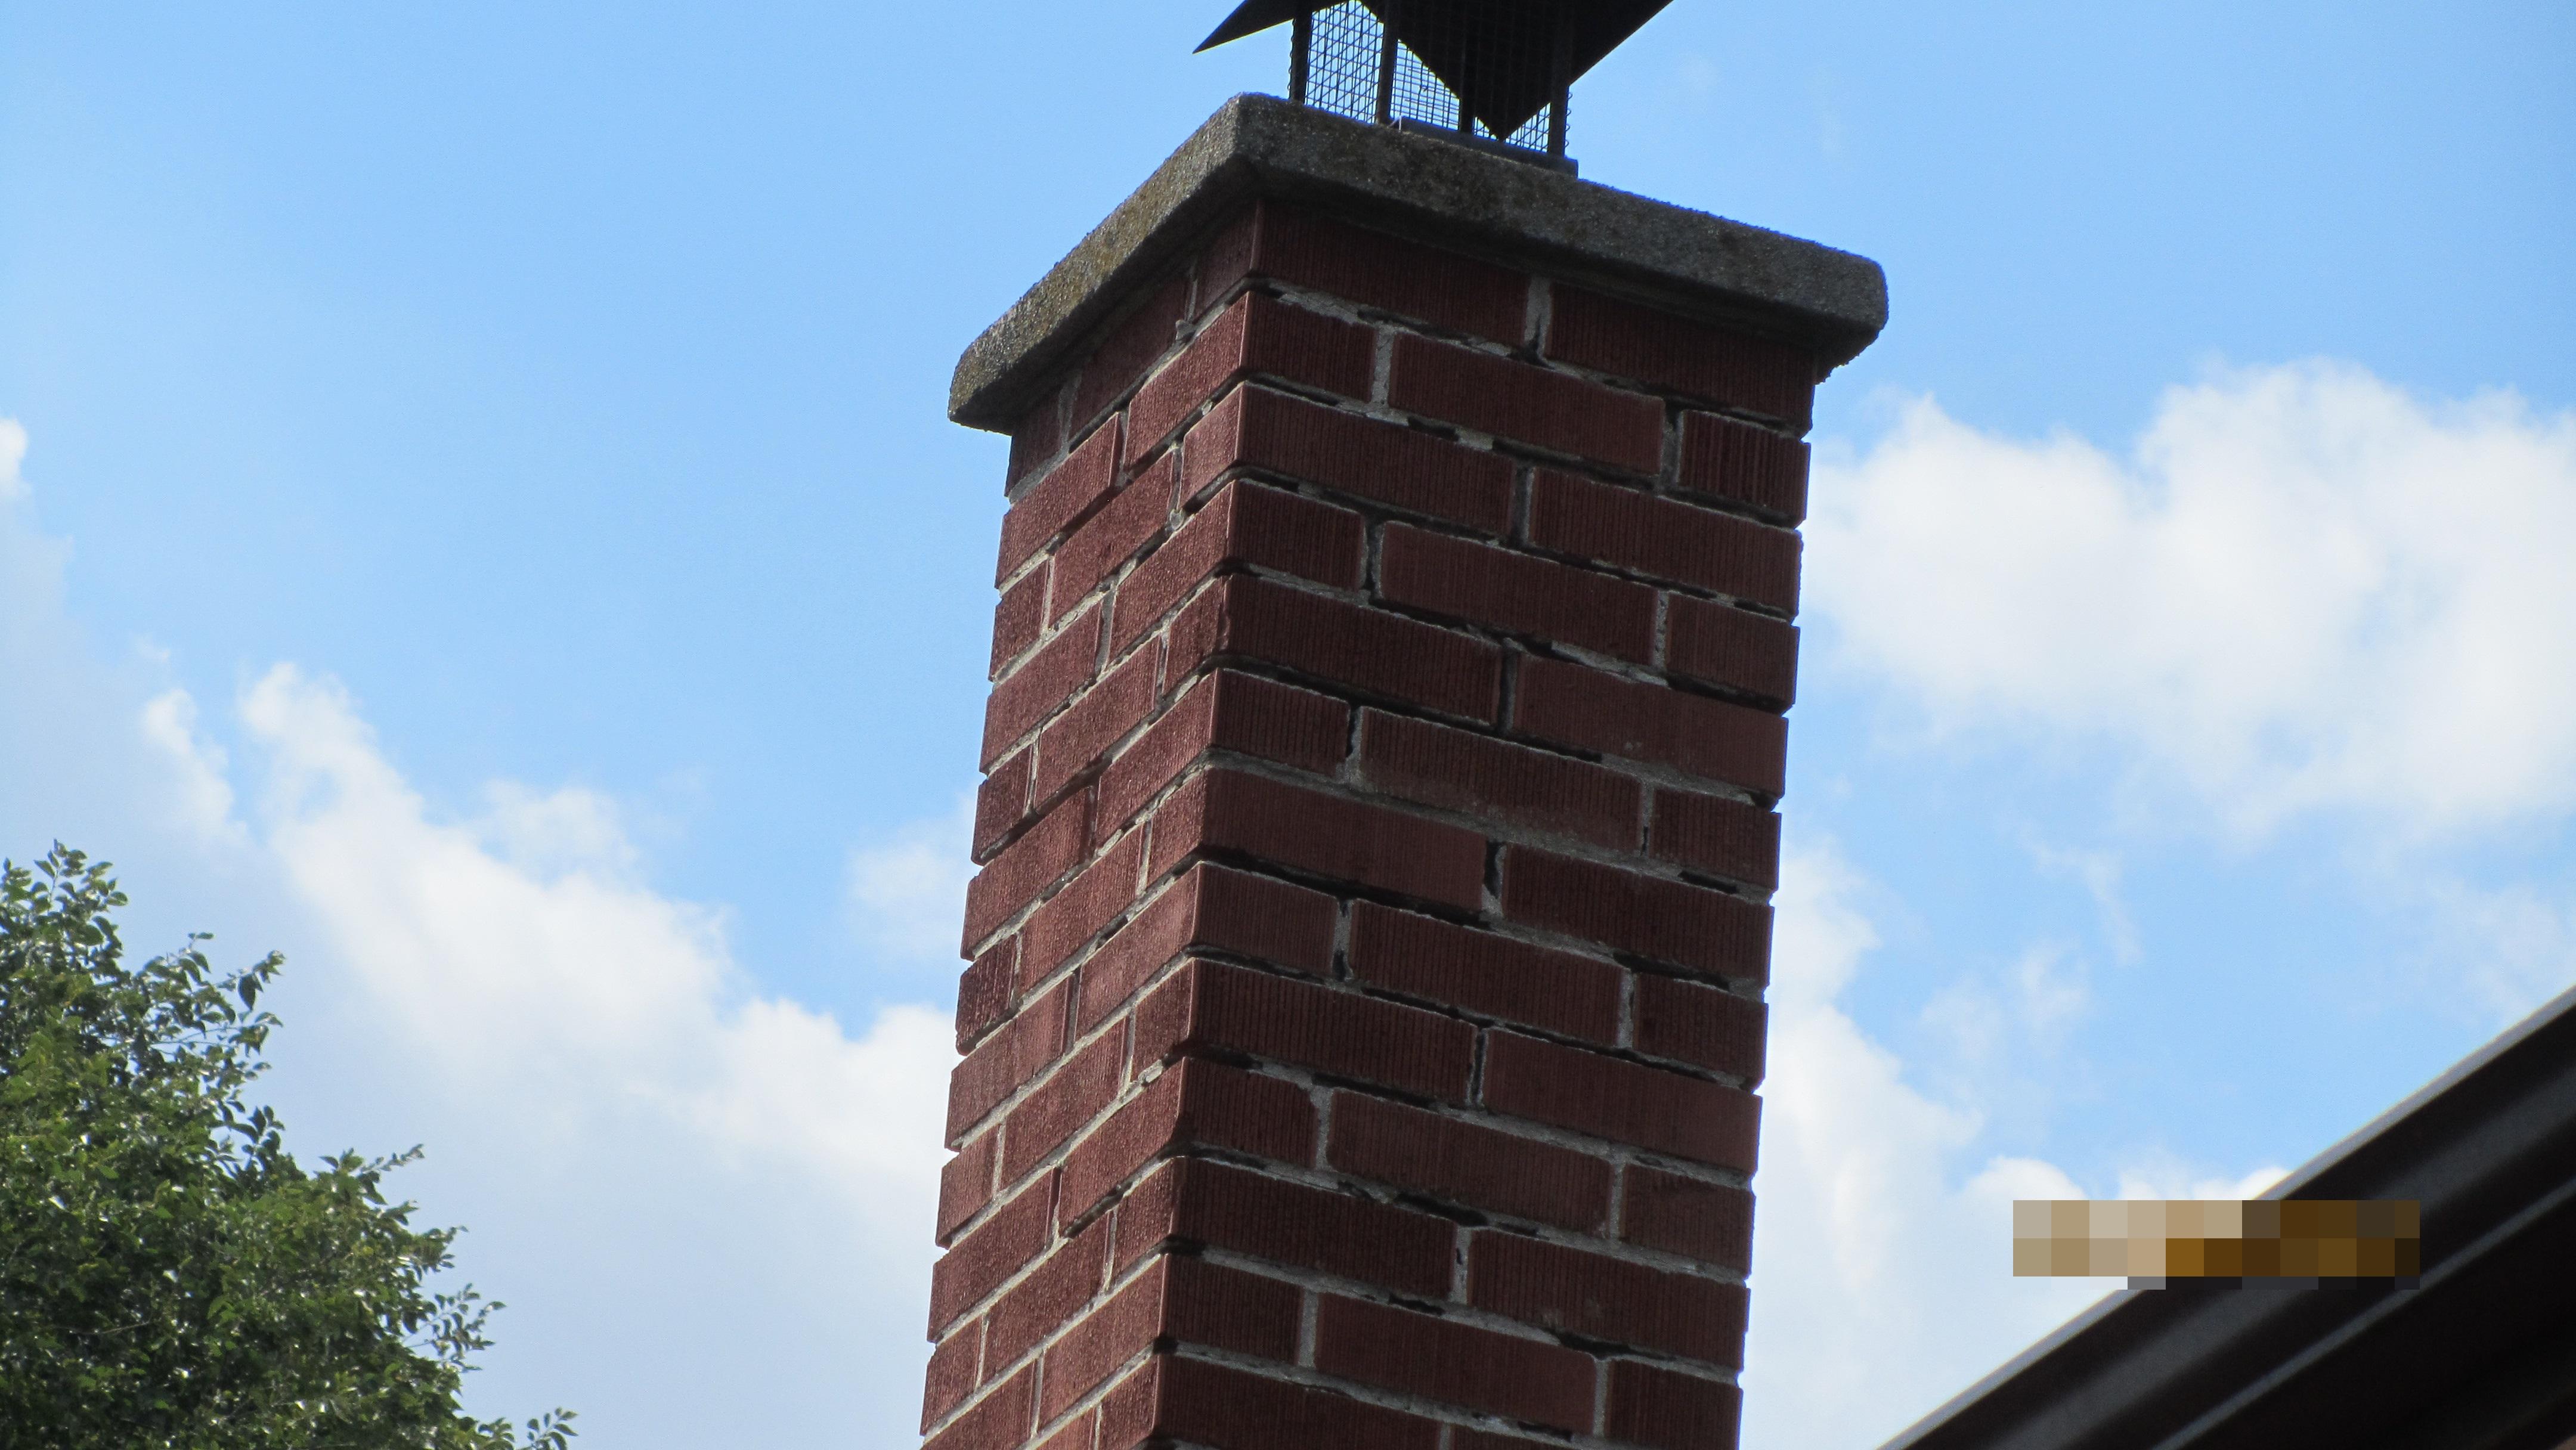 Masonry chimney mortar missing, safety hazard